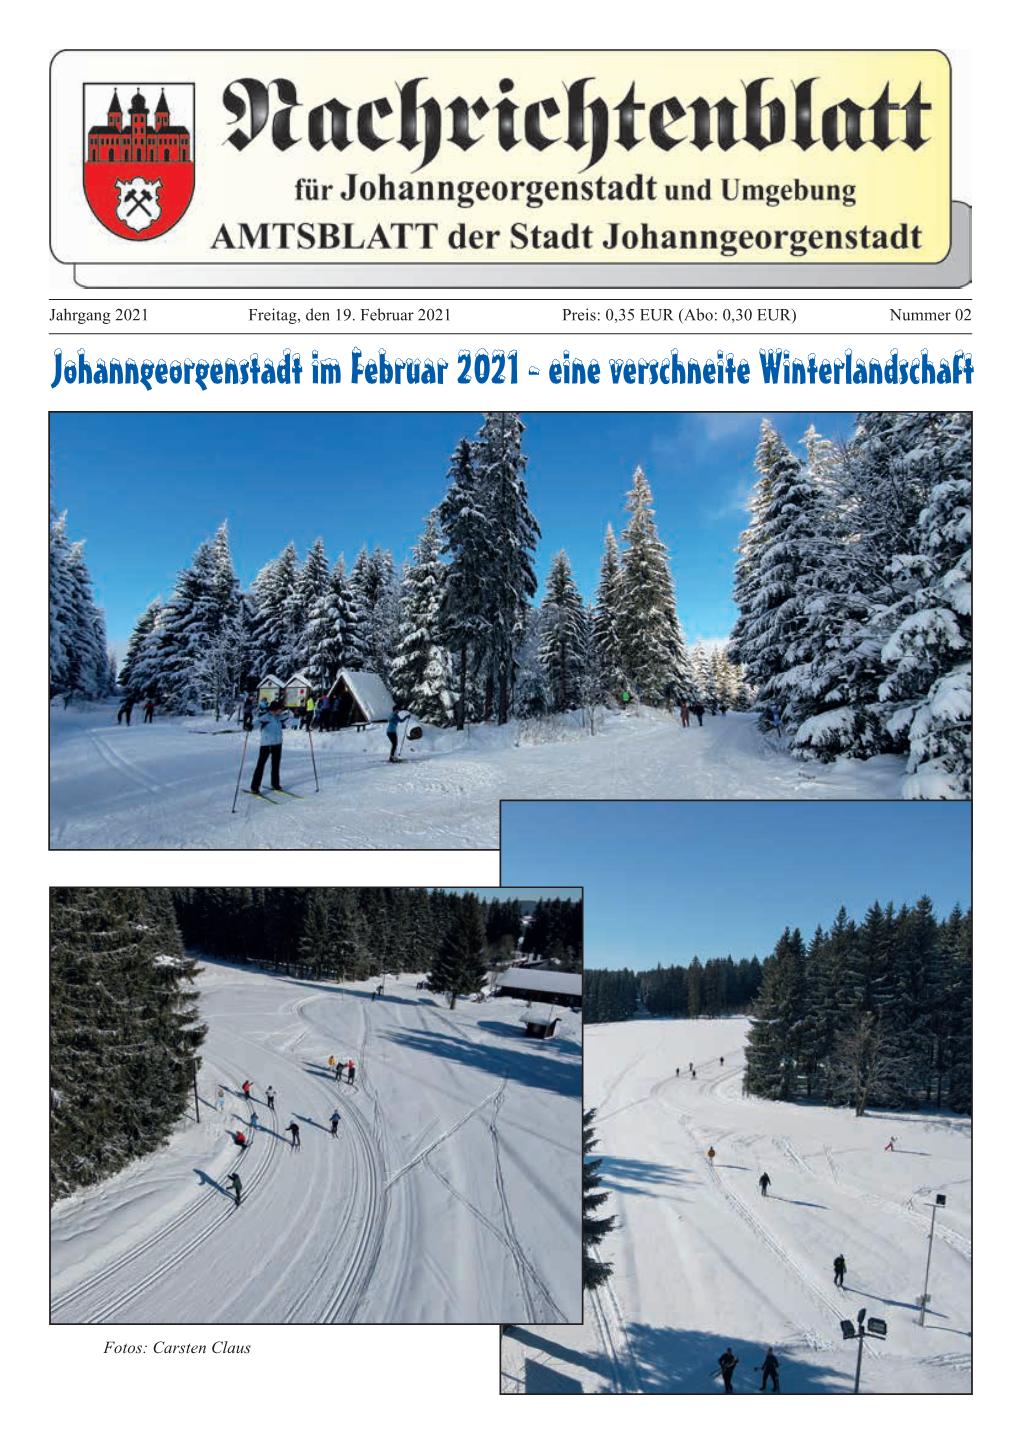 Johanngeorgenstadt Im Februar 2021 - Eine Verschneite Winterlandschaft